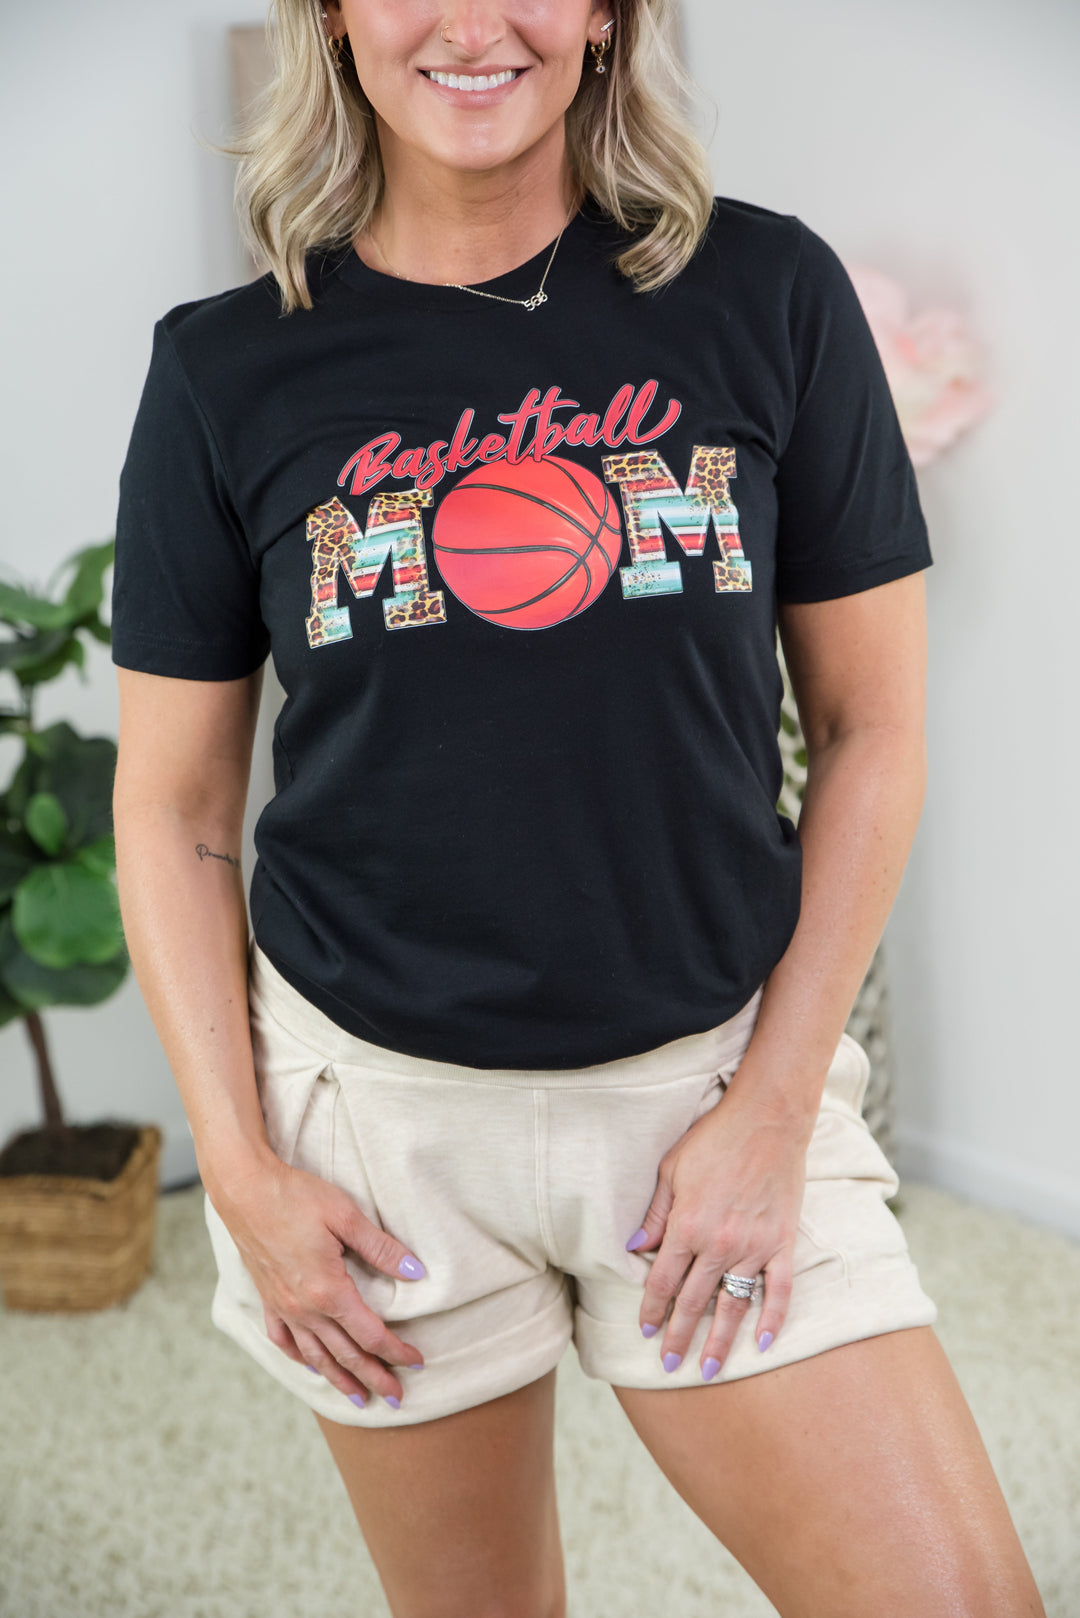 Basketball Mom Tee